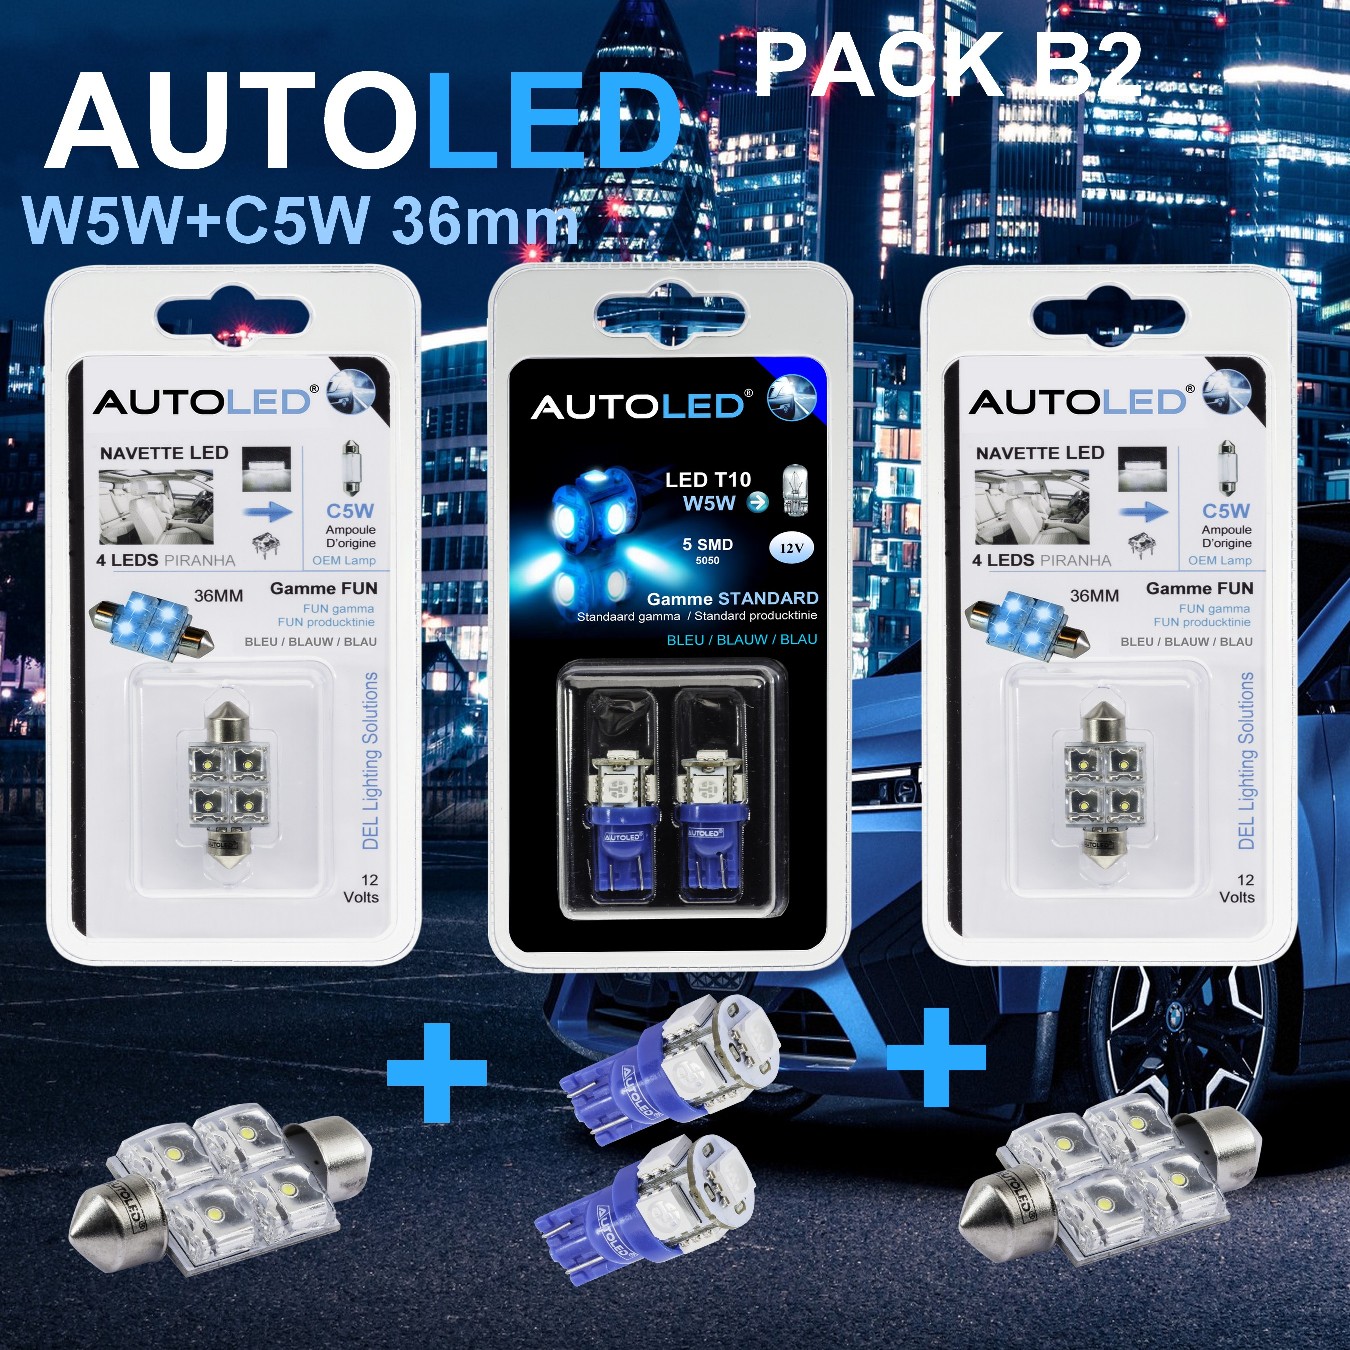 Pack-4-ampoules-led-bleu-habitacle-plafonnier-boite -a gants-coffre-t10-5leds-personnalisation-w5w-navettes-c5w-personnalisation-eclairage-autoled-pack-b2.2